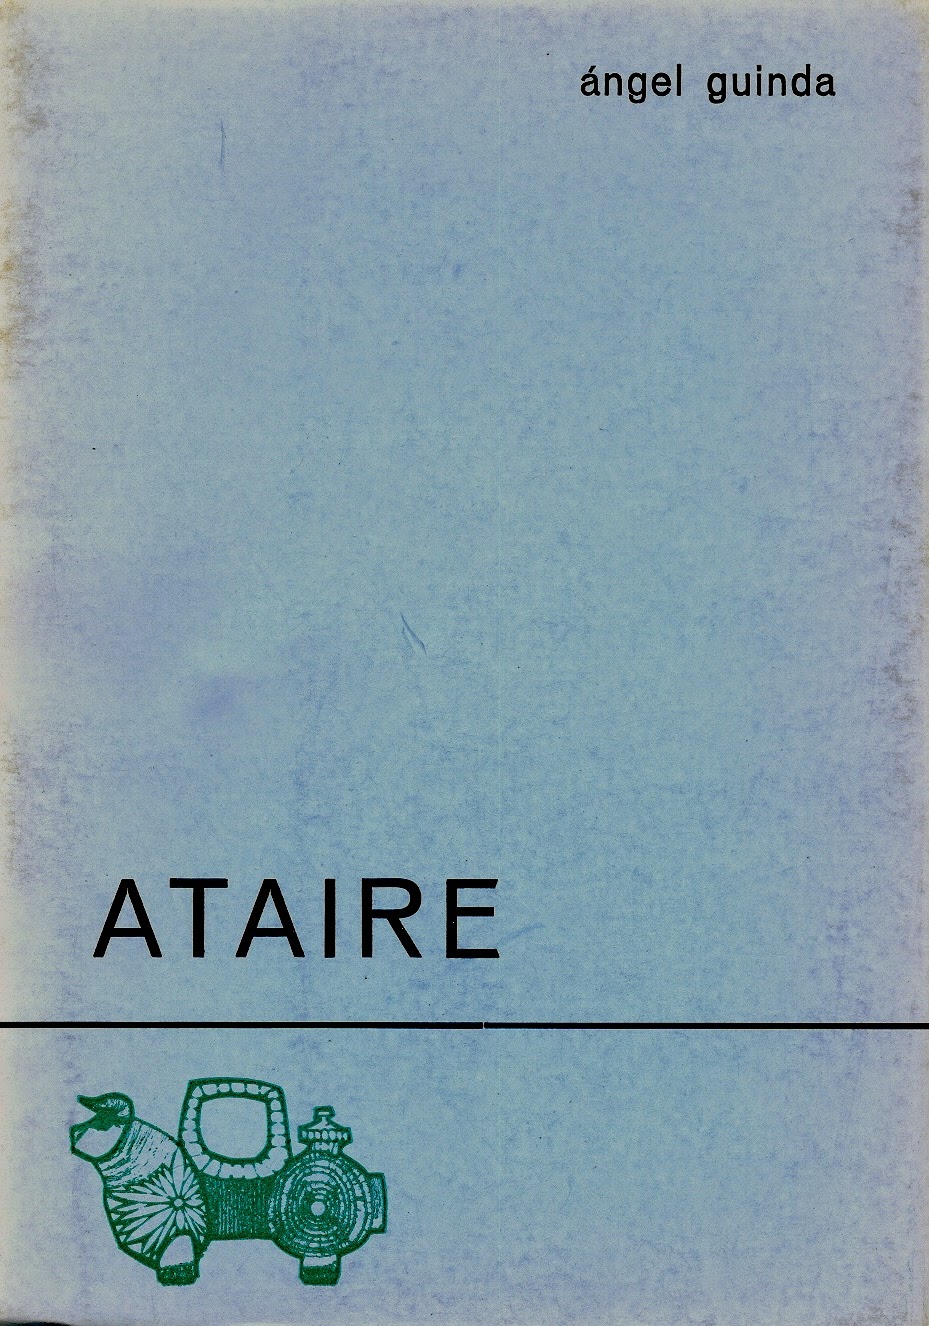 Ángel Guinda, "Ataire", Col. Azul, Ed. El Toro de Barro, Carboneras del Guadazaón 1975